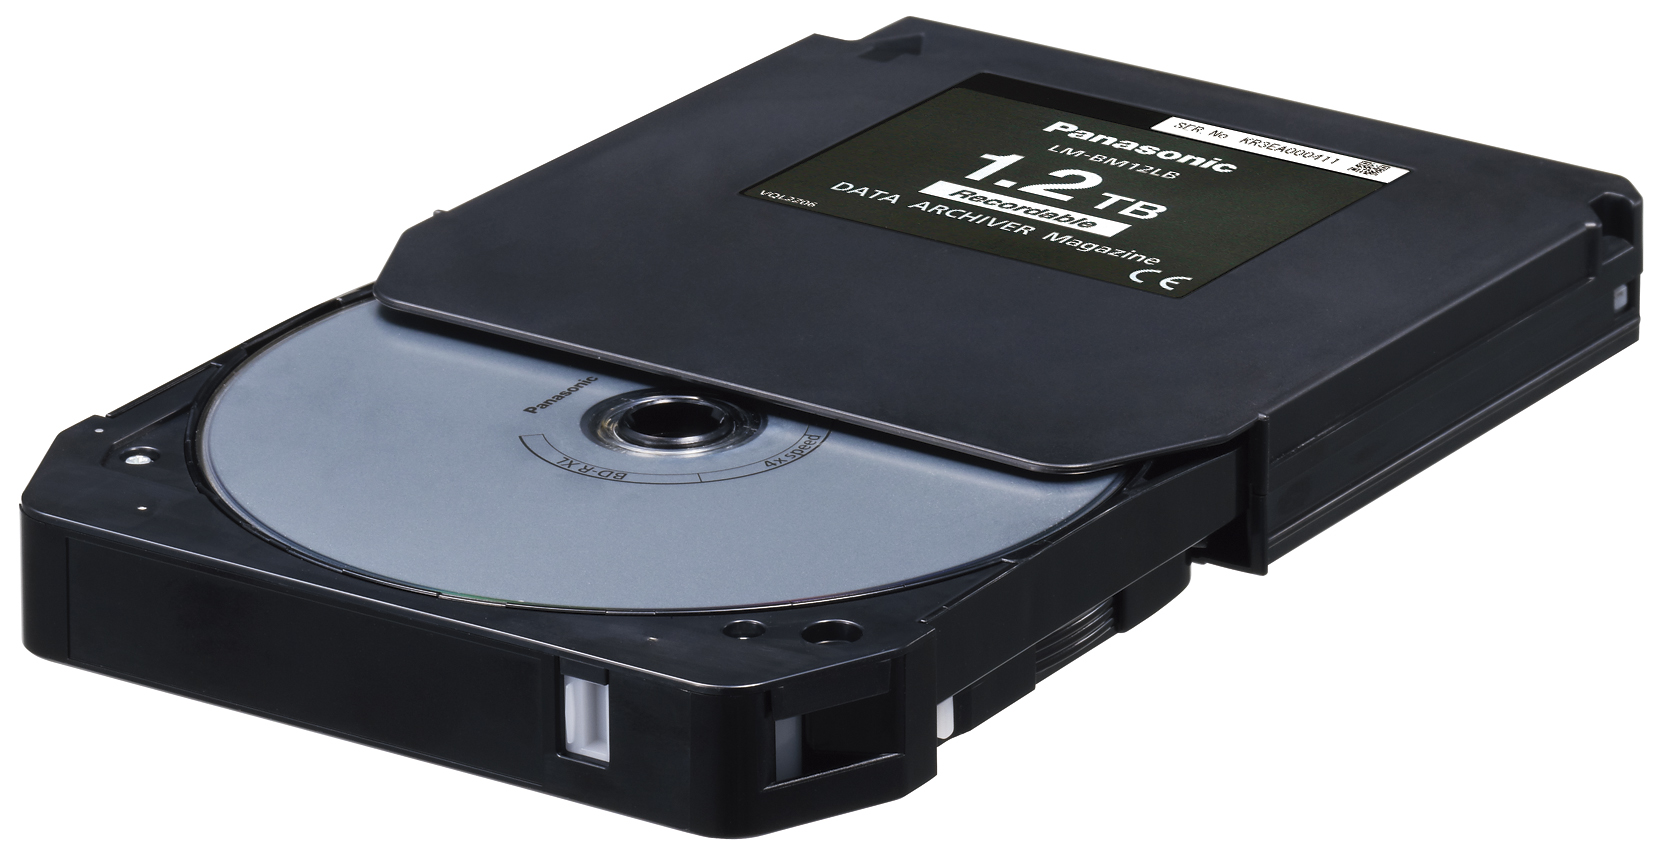 Thiết bị lưu trữ dữ liệu trên đĩa blu-ray (Nguồn: Panasonic System Solutions Asia Pacific)